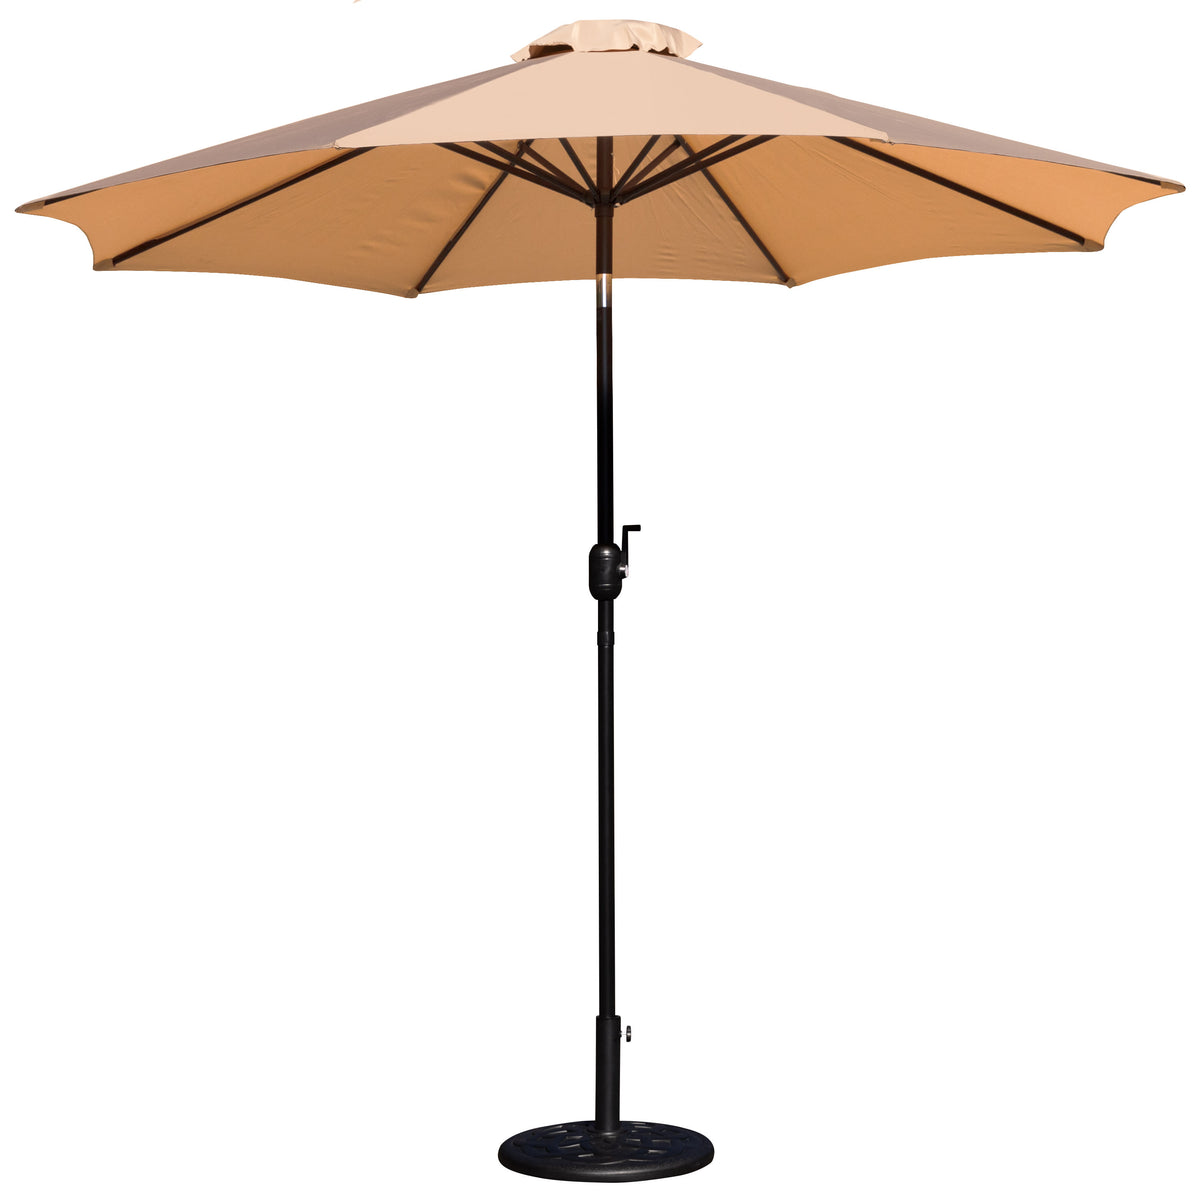 Tan |#| Bundled Set - Tan 9 FT Round Umbrella & Universal Black Cement Waterproof Base